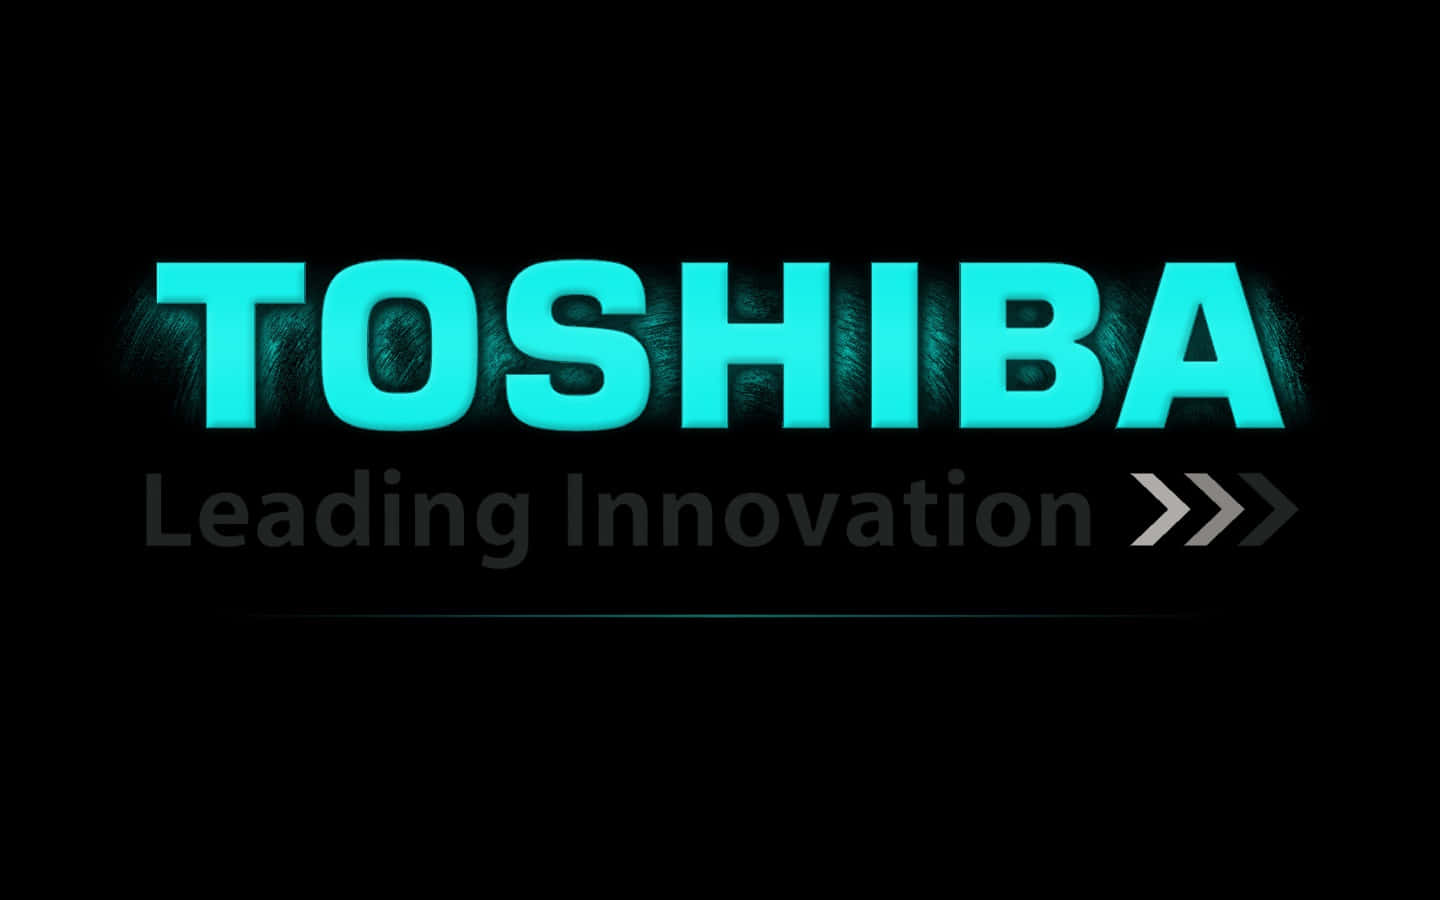 33+] Toshiba Laptop Wallpapers - WallpaperSafari